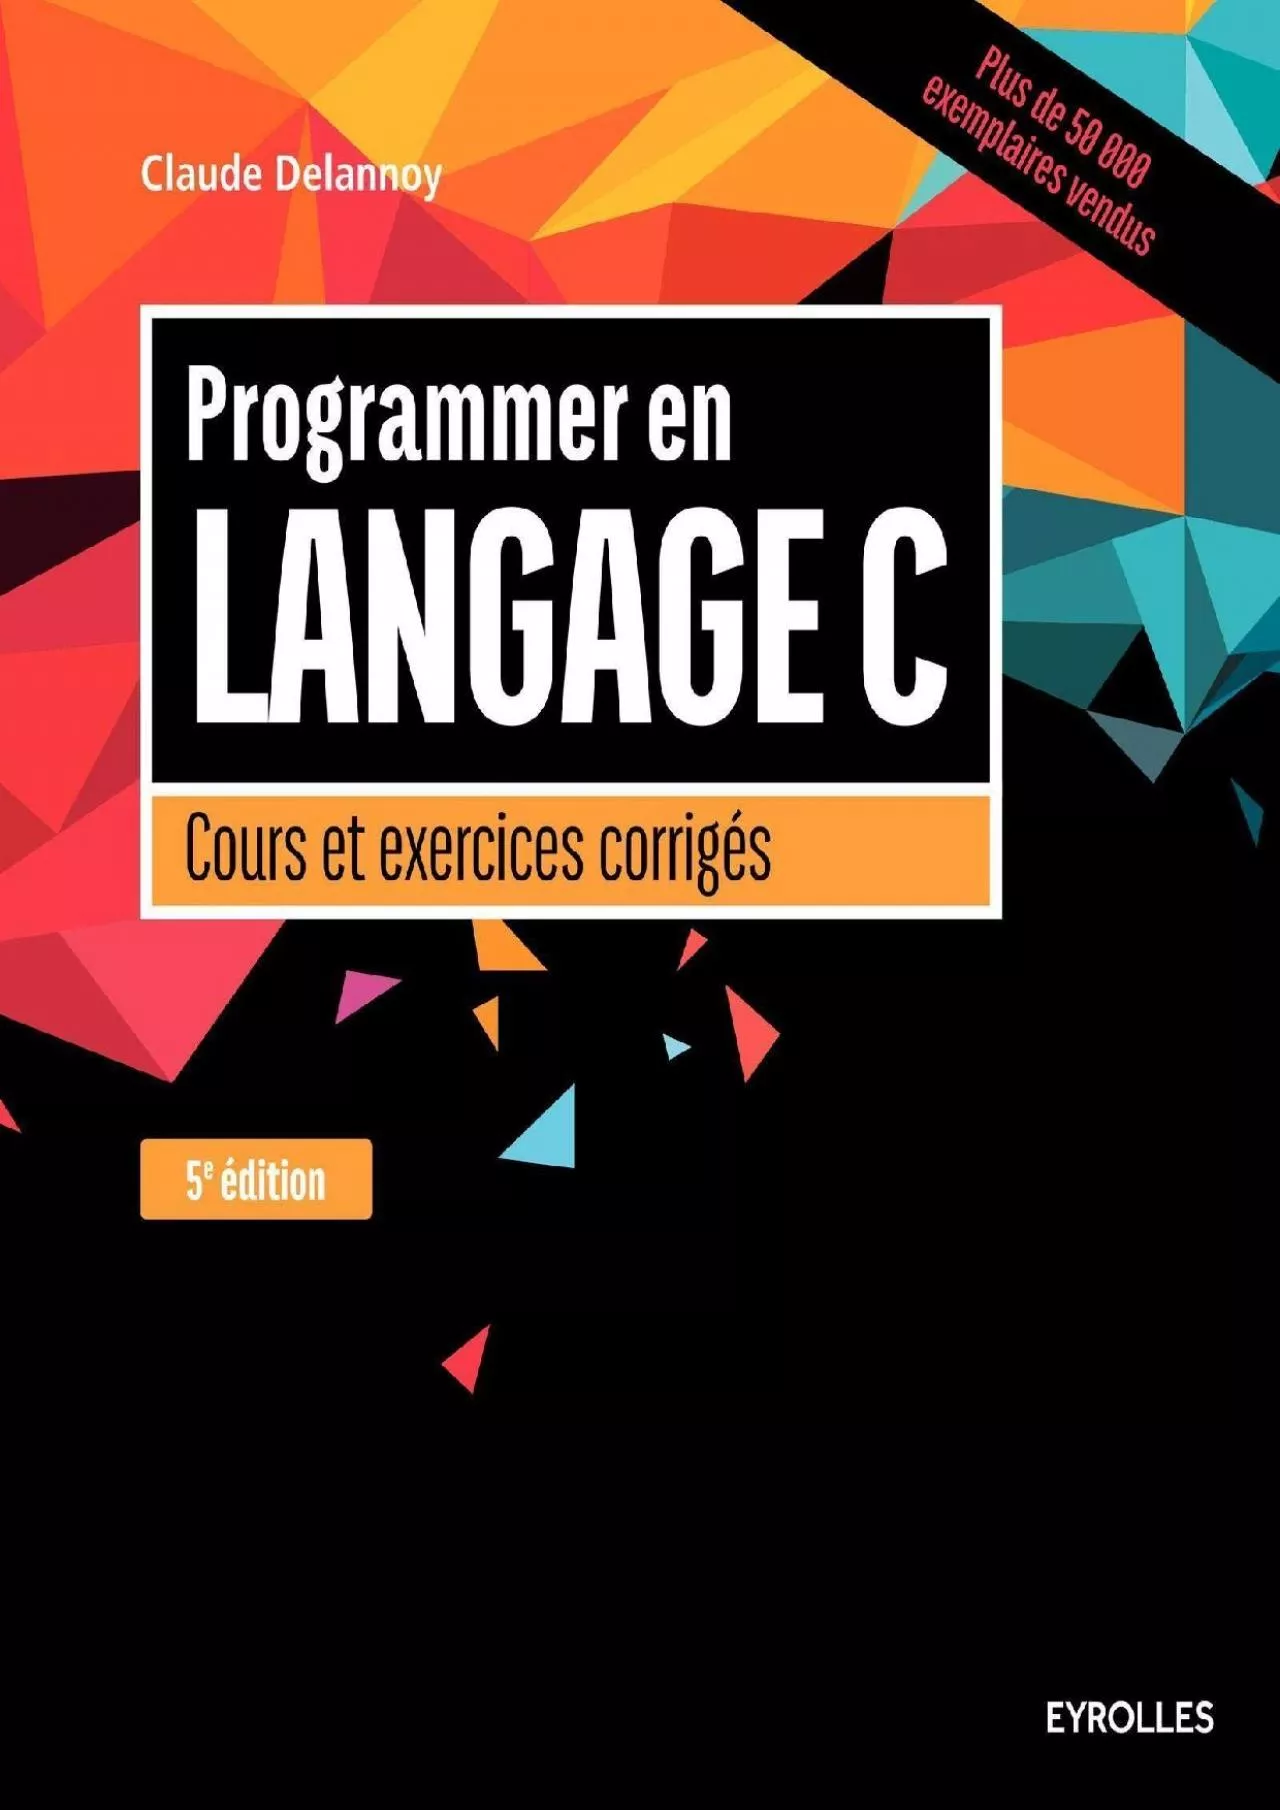 [FREE]-Programmer en langage C, 5e édition: Cours et exercices corrigés.